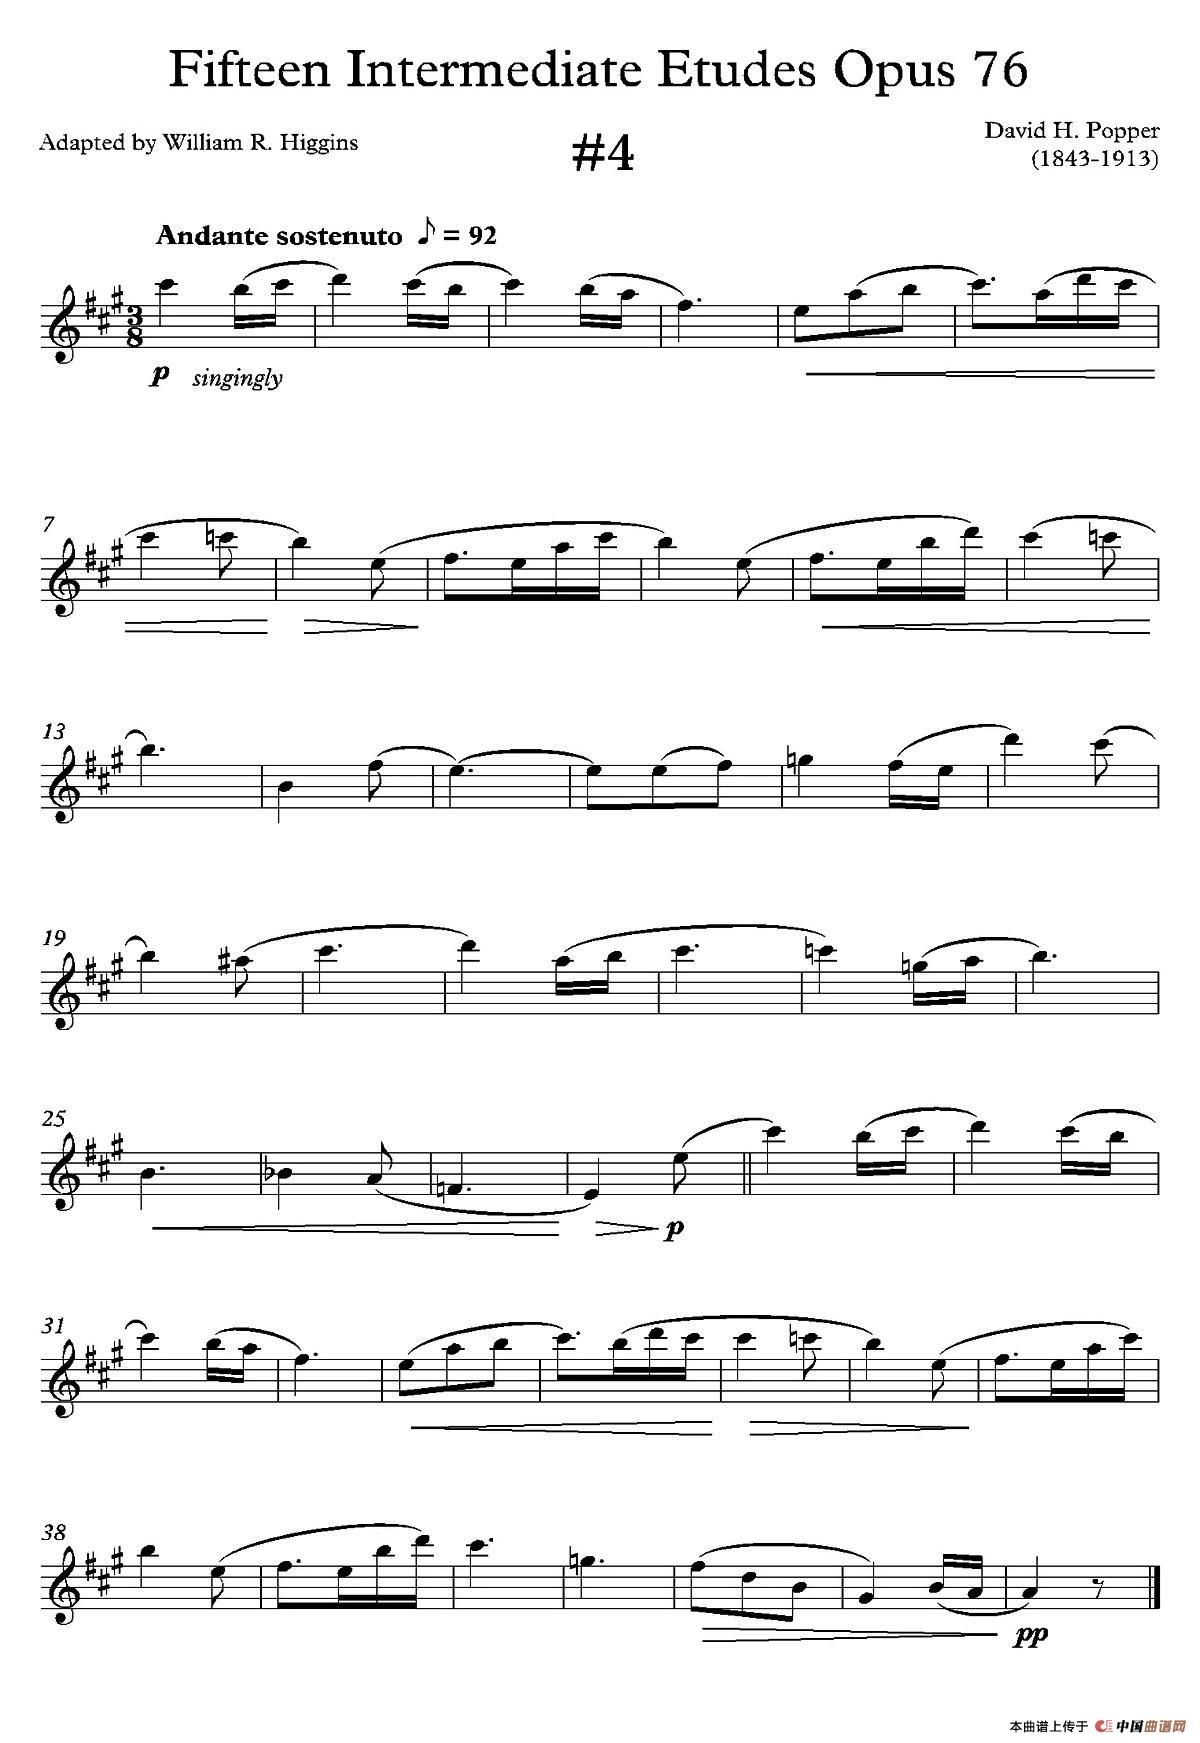 中级练习曲15首 Op76（4）(1)_006.jpg